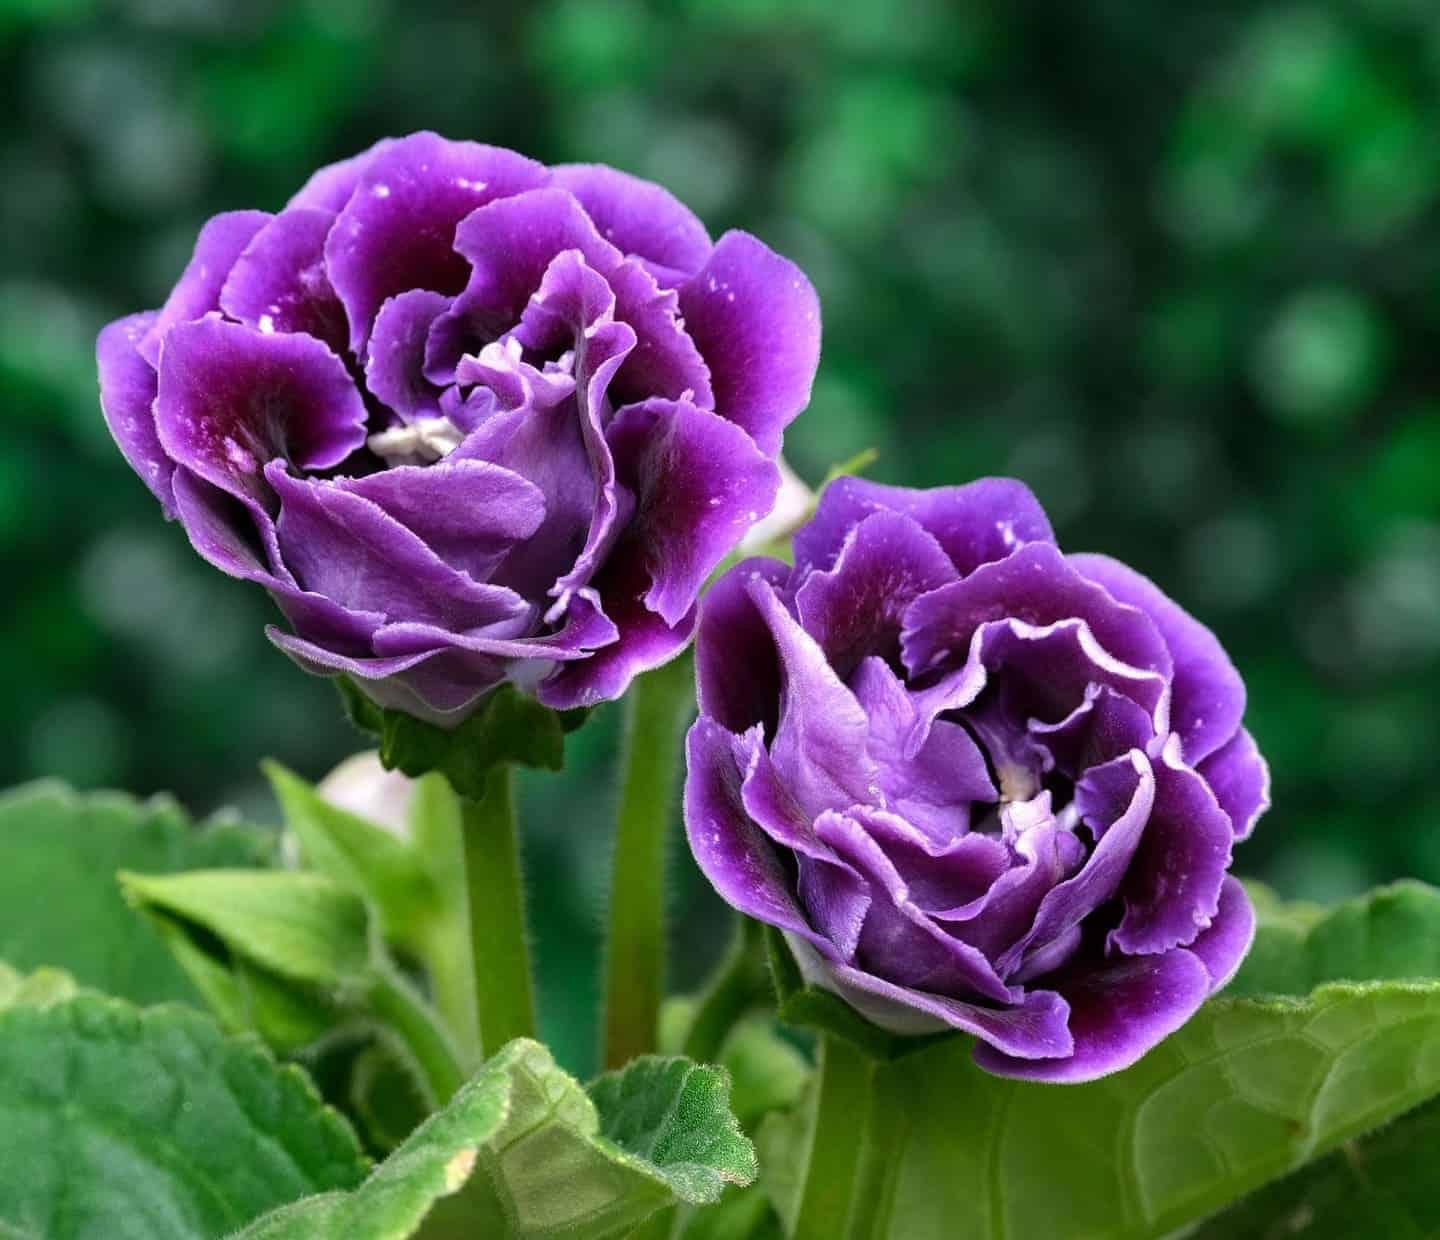 Gloxínia: a planta que encanta com suas flores exuberantes.